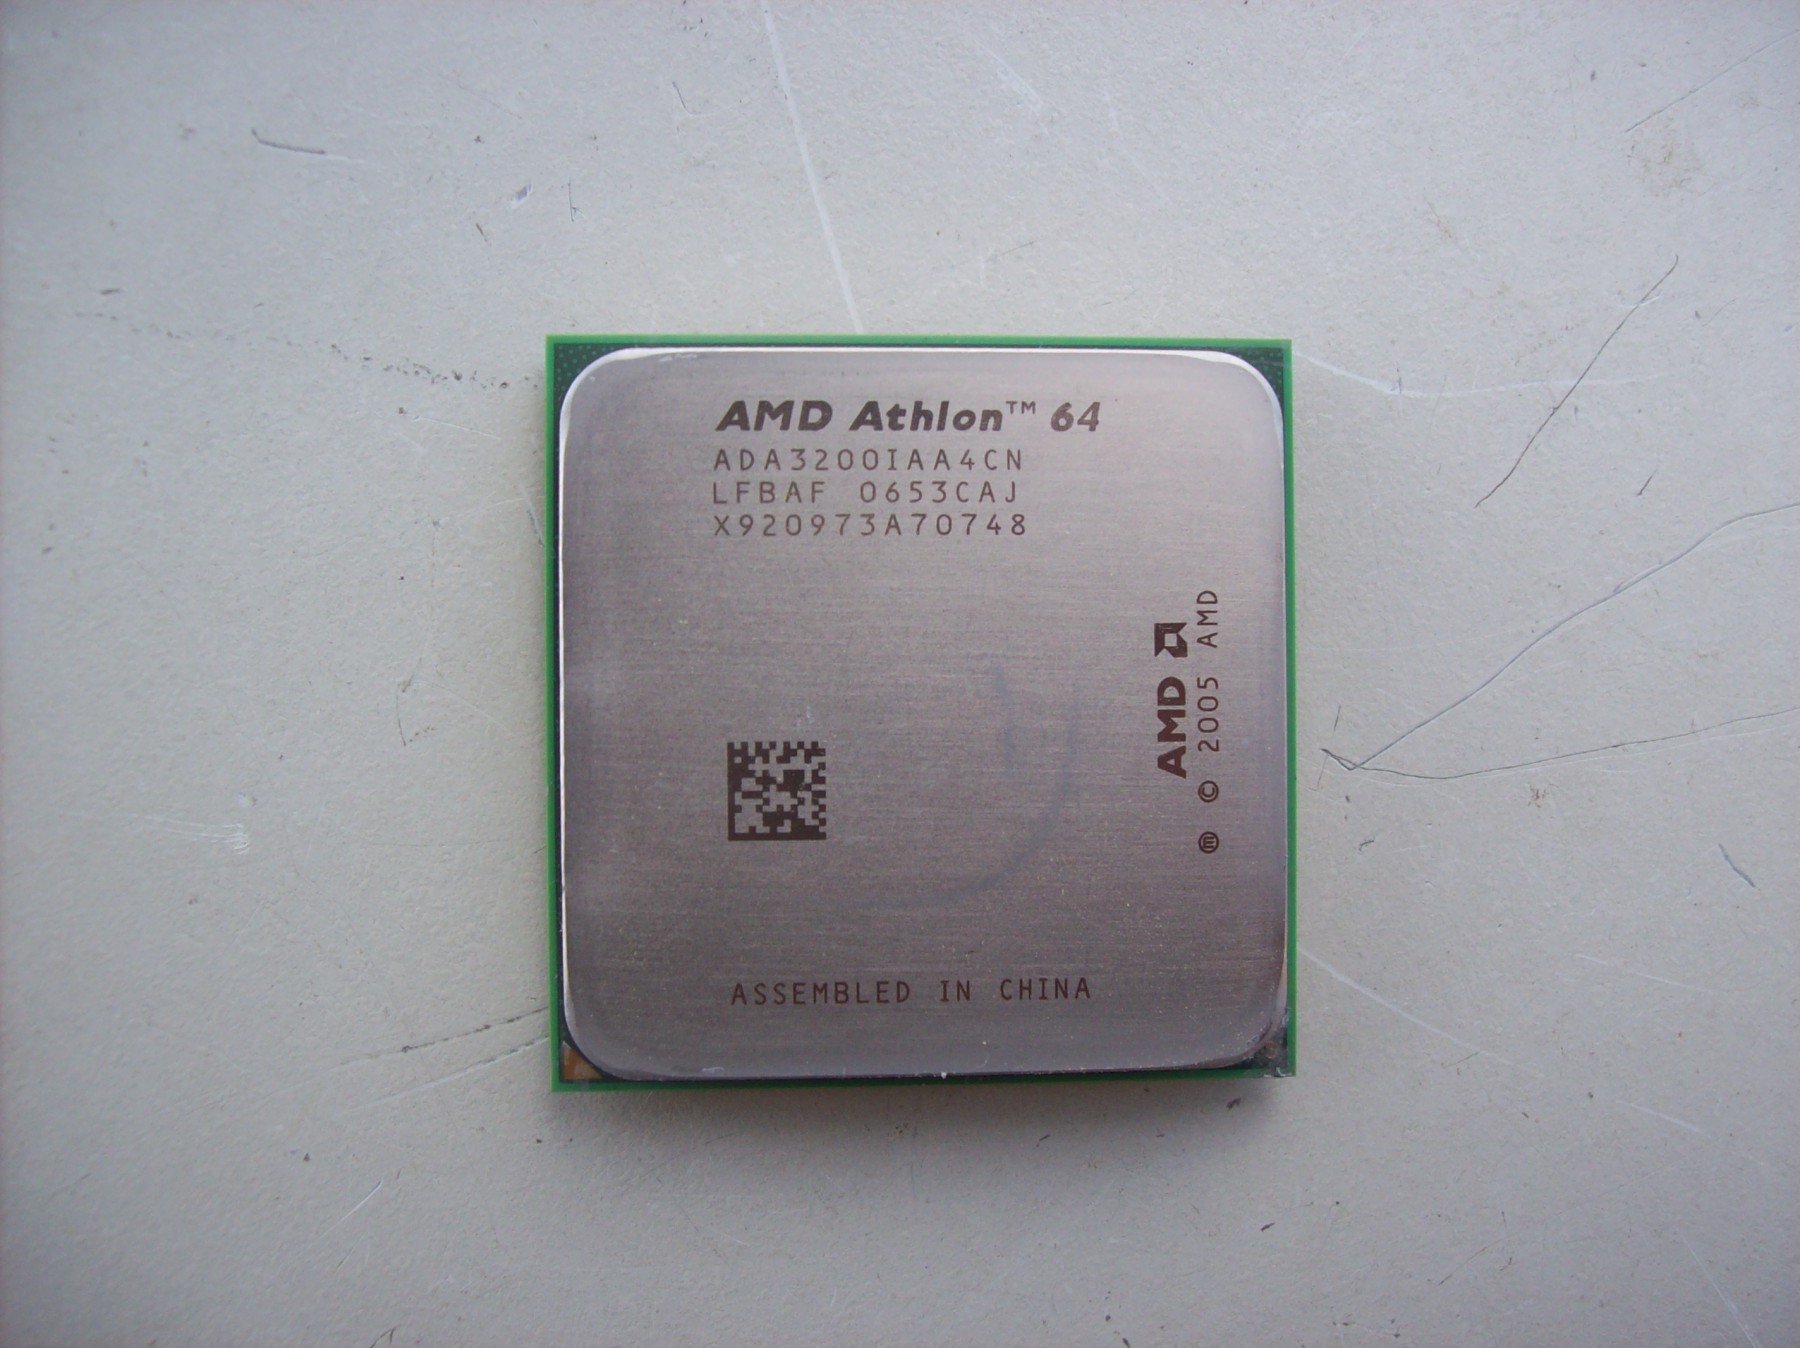 AMD Athlon 64 2001 года. Атлон 64 2003 года. ООО Атлон. АМД Атлон 64 ада 3200iaa4cn цена. Athlon 650